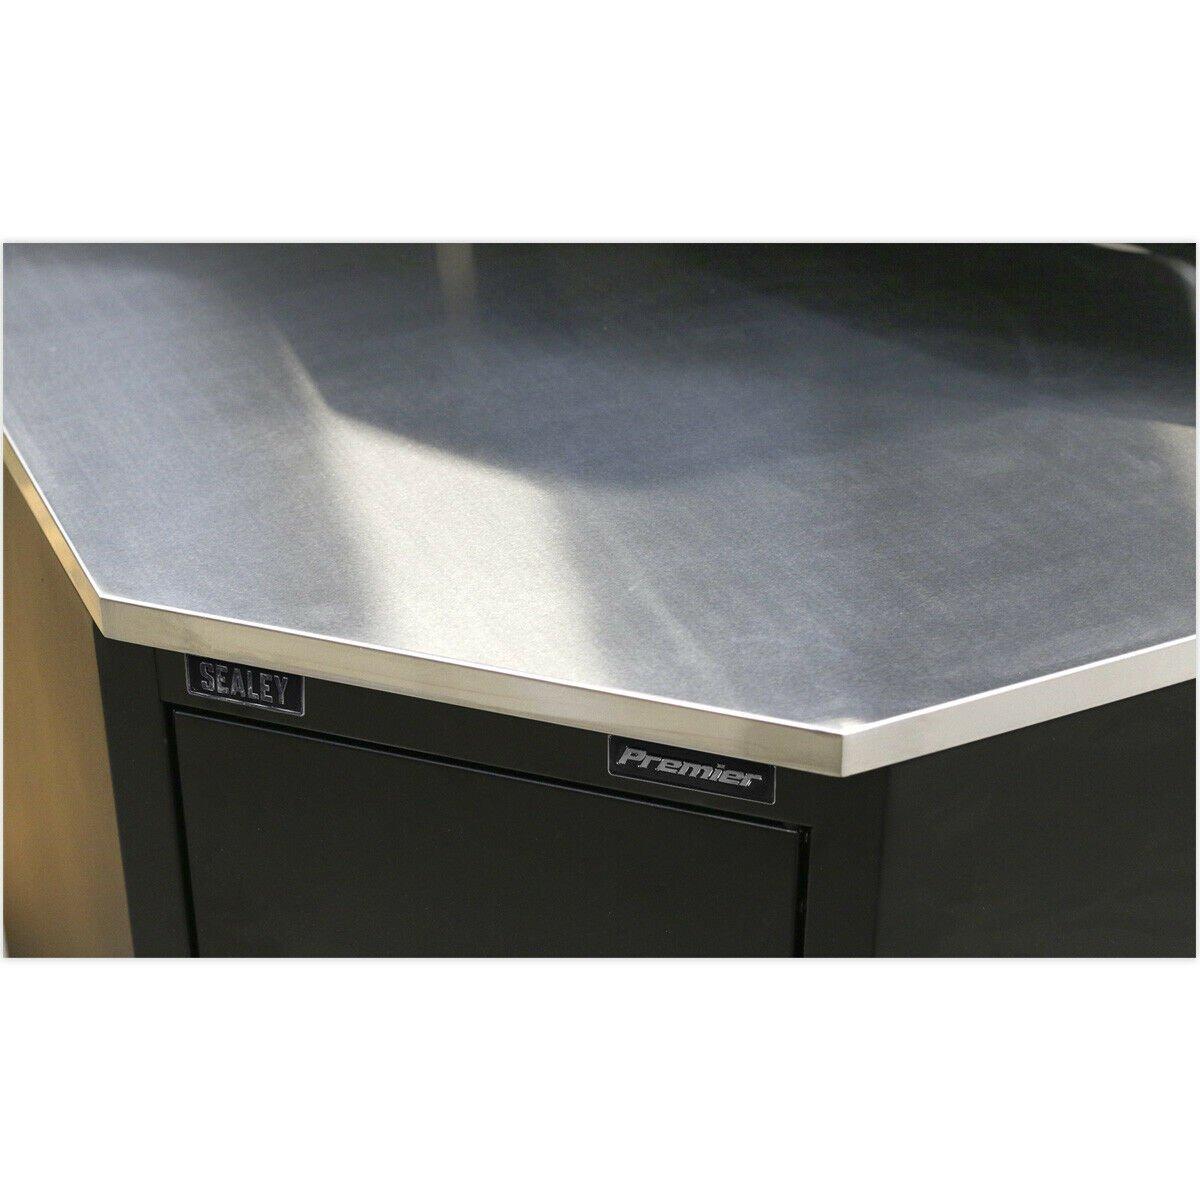 930mm Stainless Steel Corner Worktop for ys02615 Modular Corner Floor Cabinet